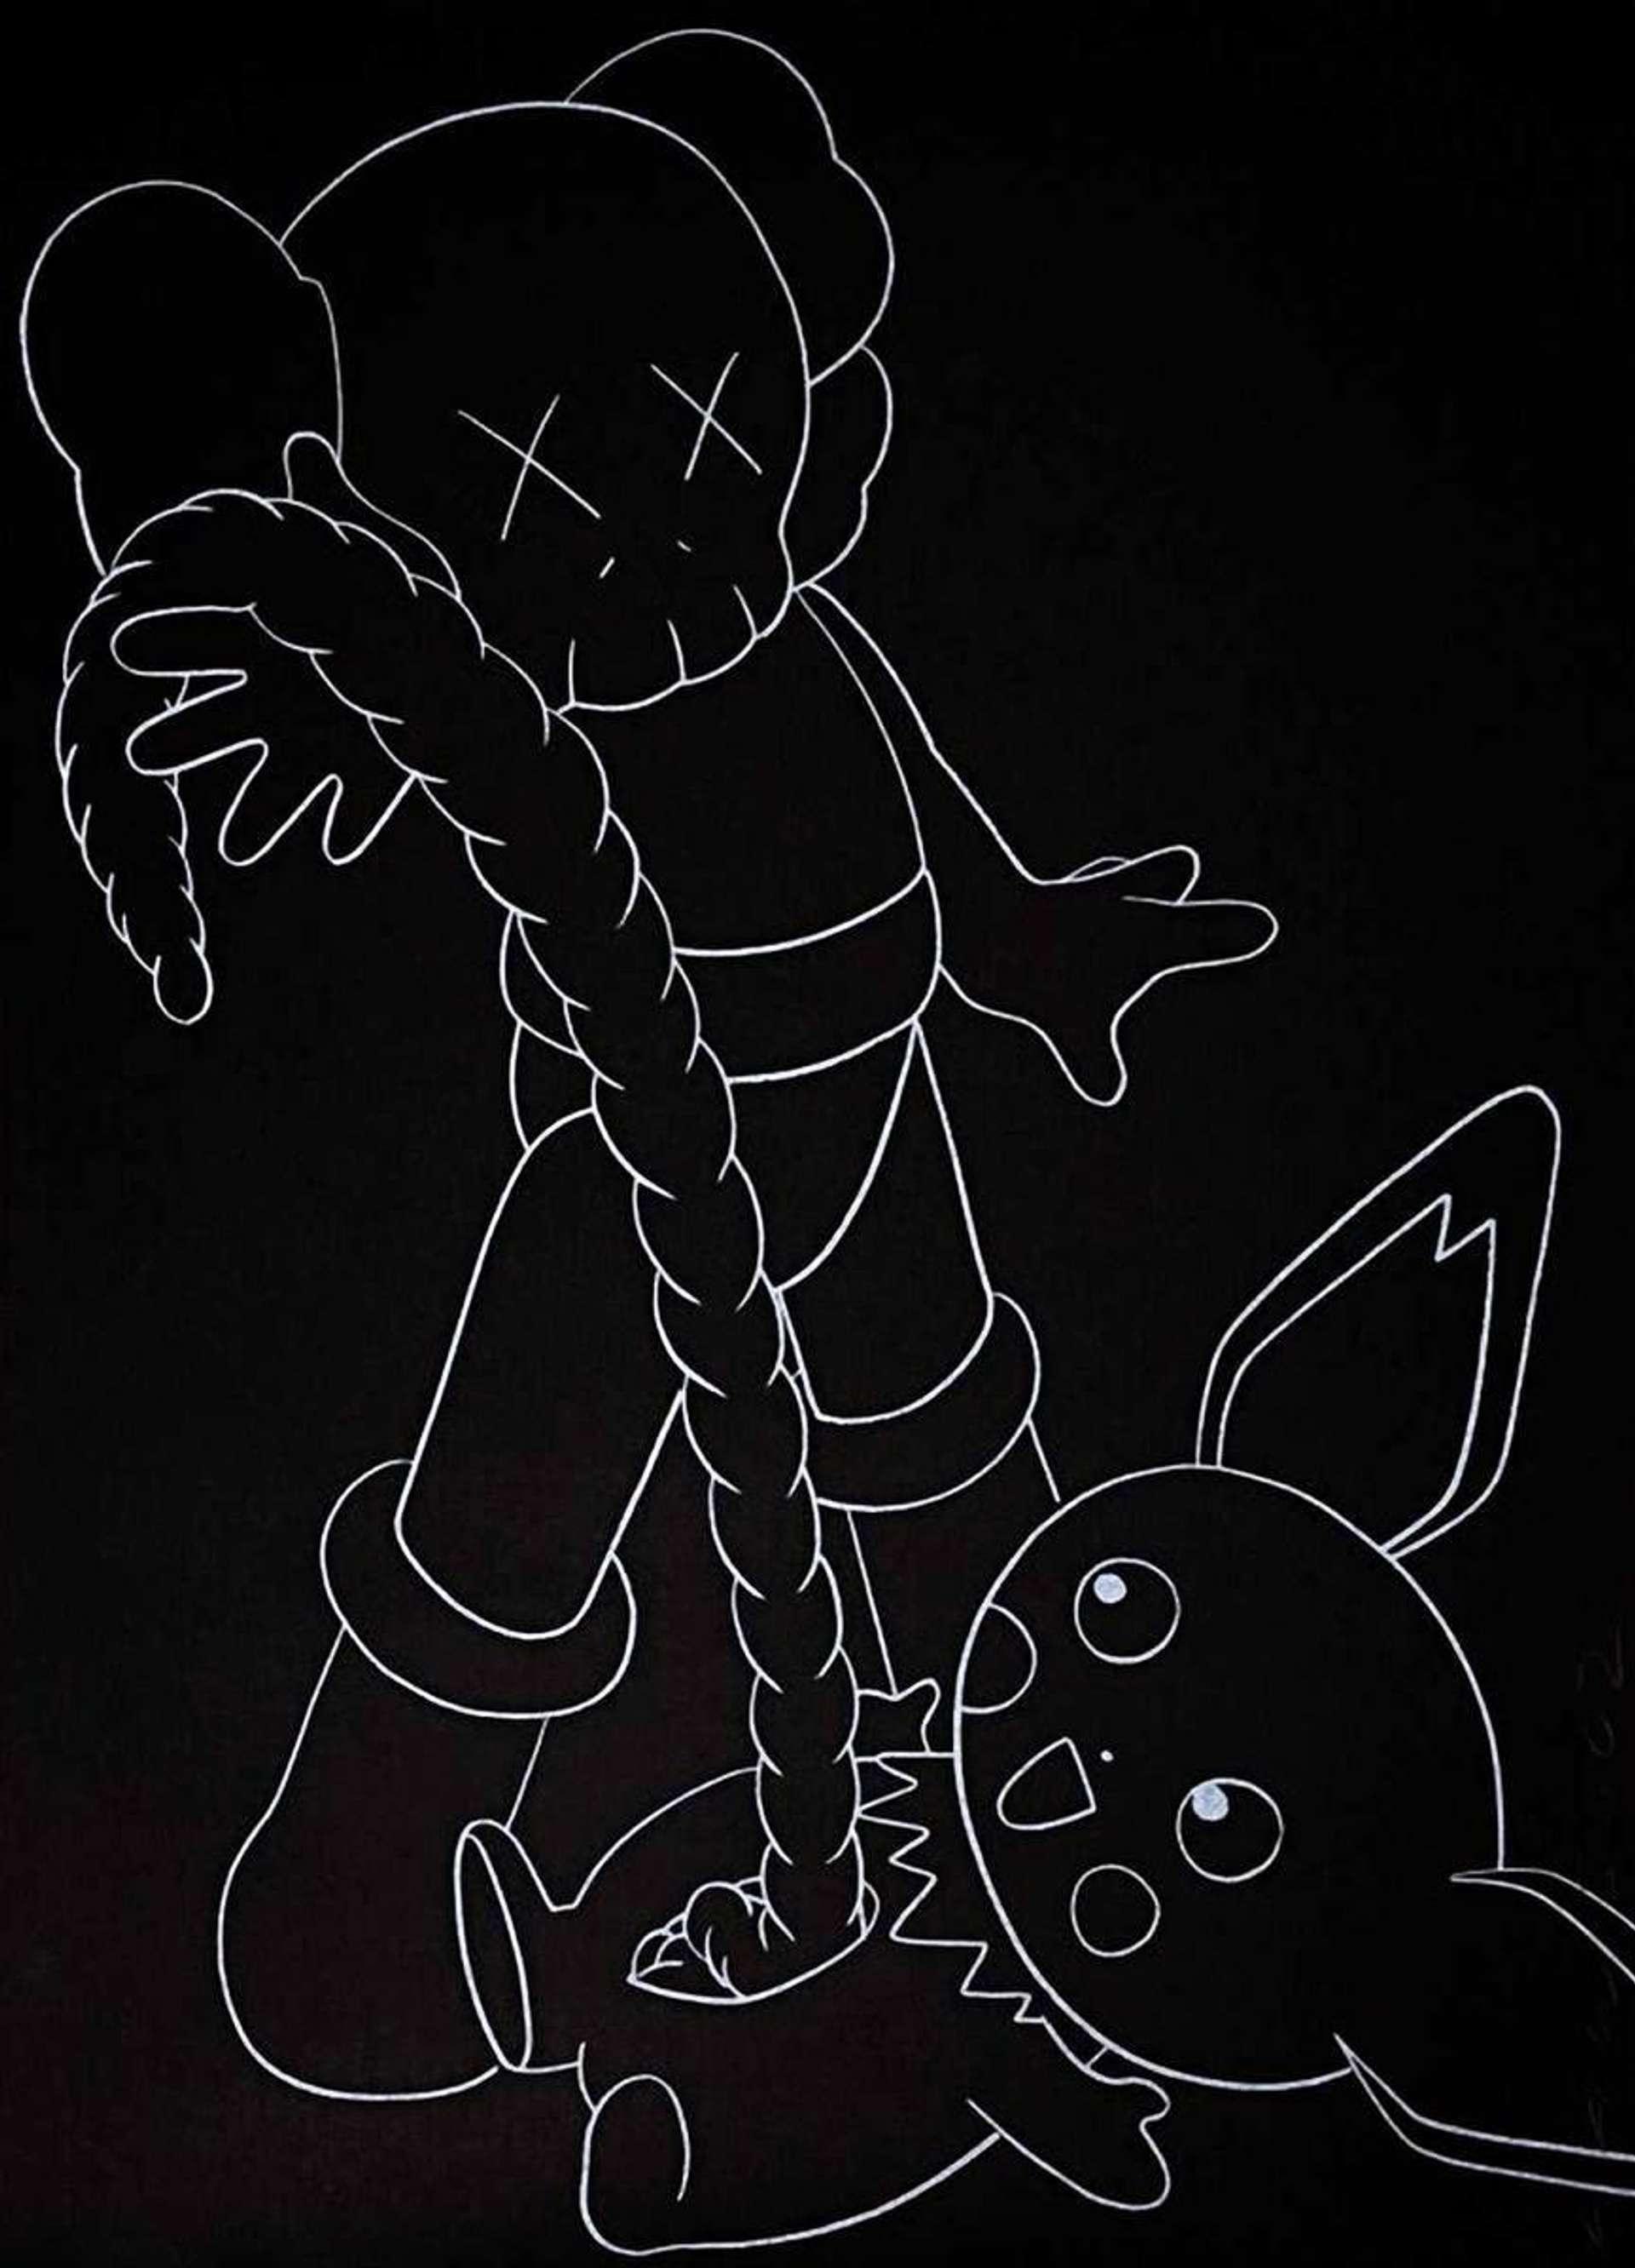 Companion vs Pikachu by KAWS